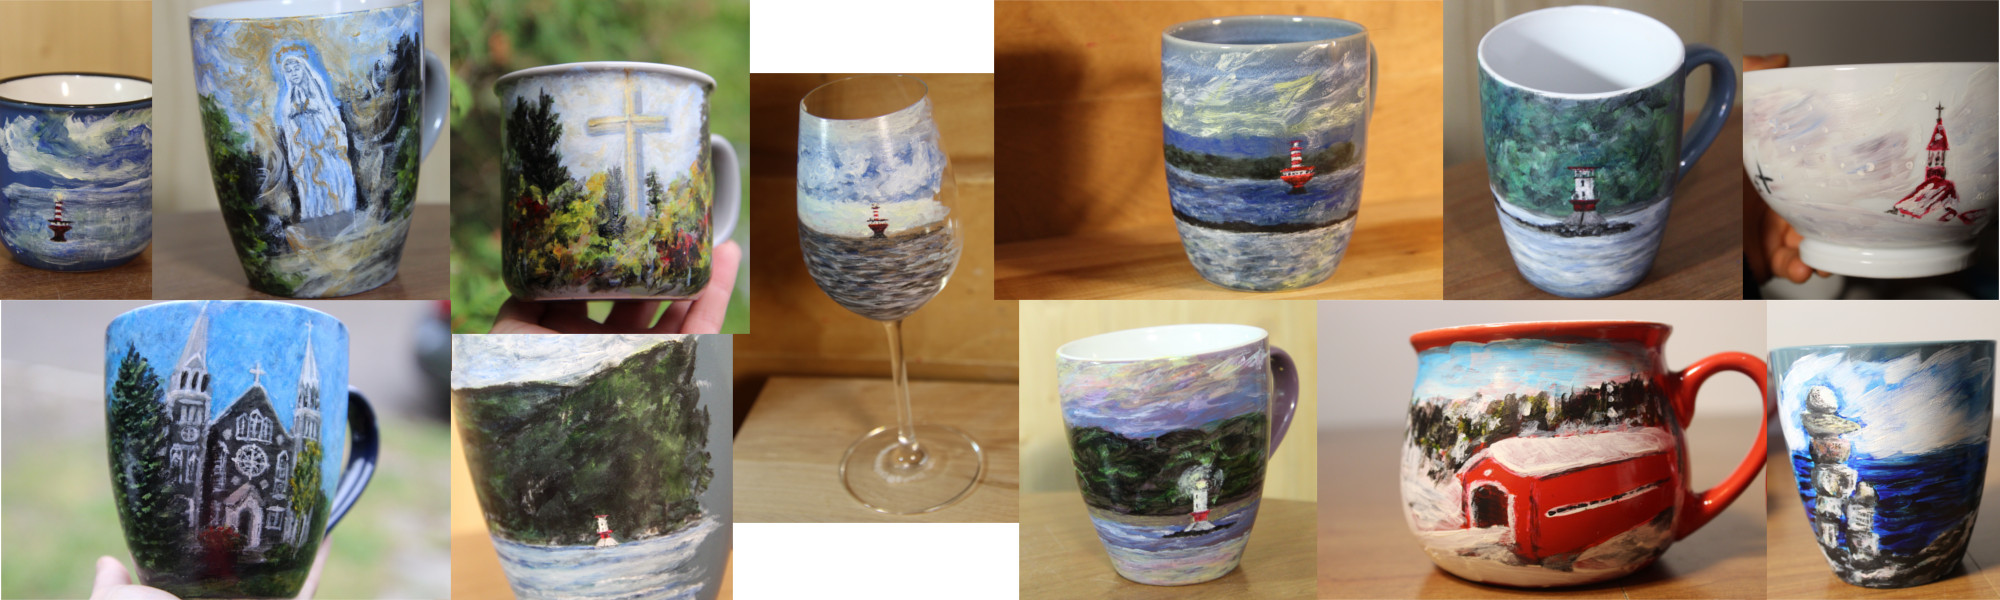 Tasses, bol, coupe à vin peints à la main - oeuvres vendues - Sandra Caissy, l'artiste